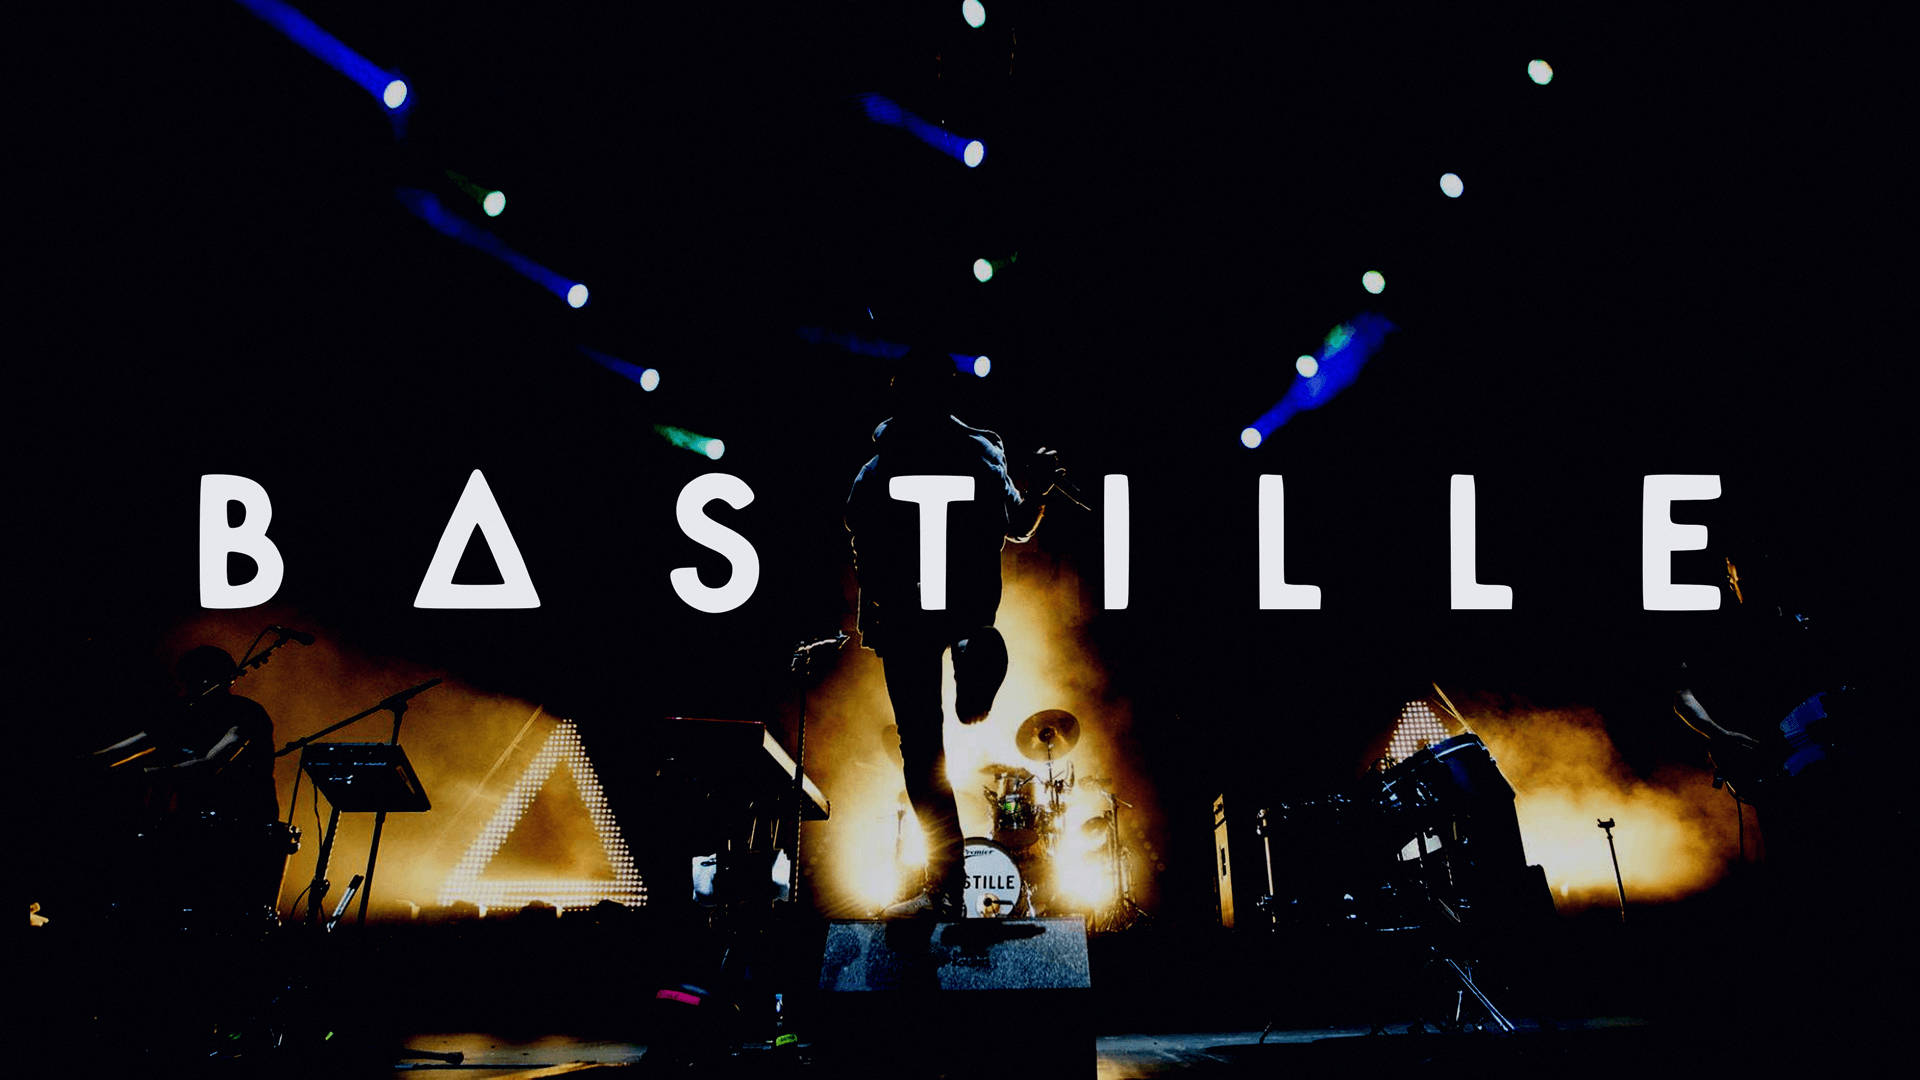 Bastille Band Stage Background